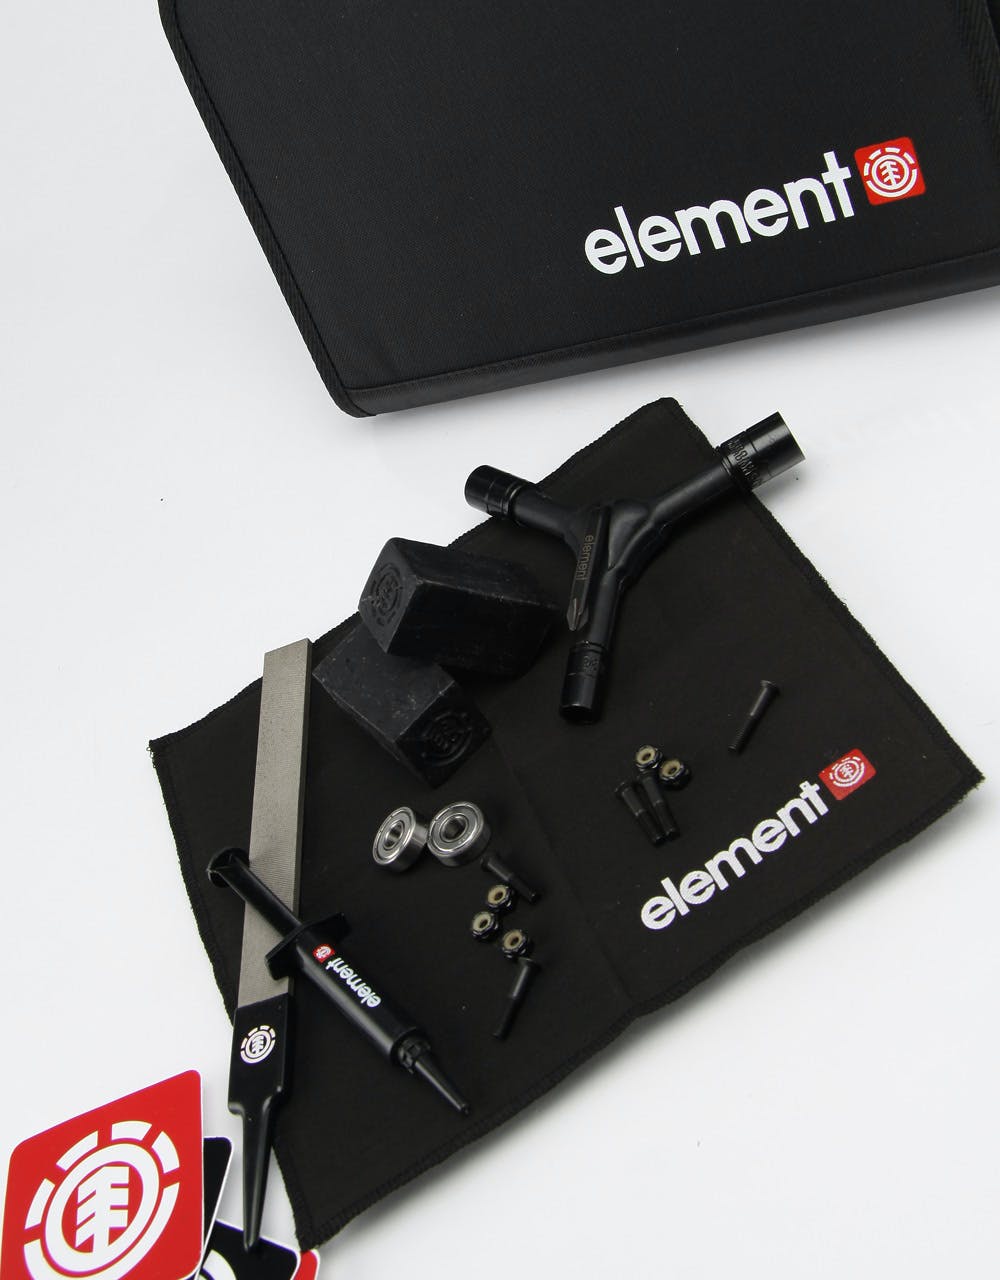 Element Survival Kit